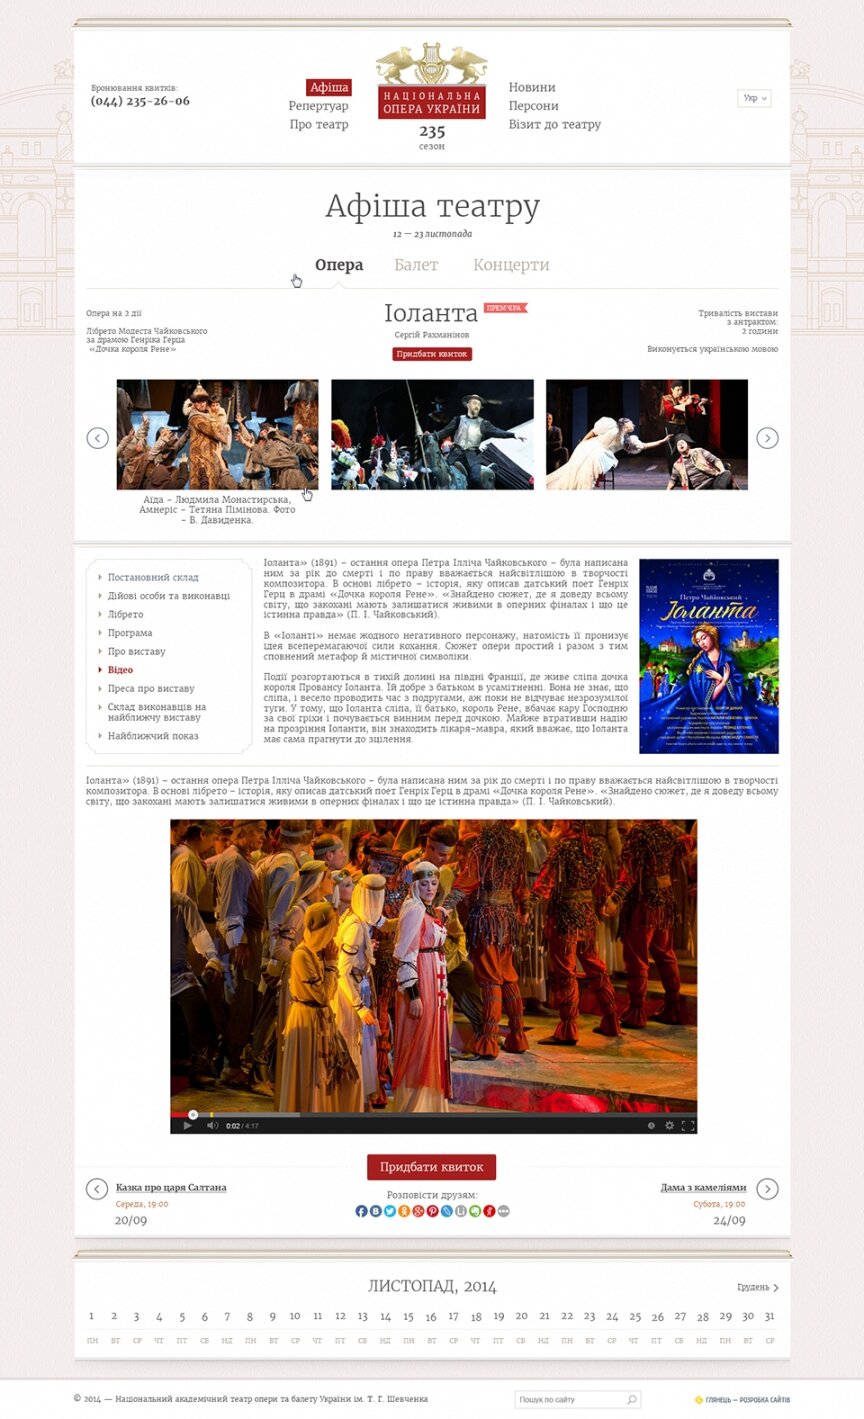 дизайн внутрішніх сторінкок на тему Мистецтво, література, фото, кіно — Національна опера України 3